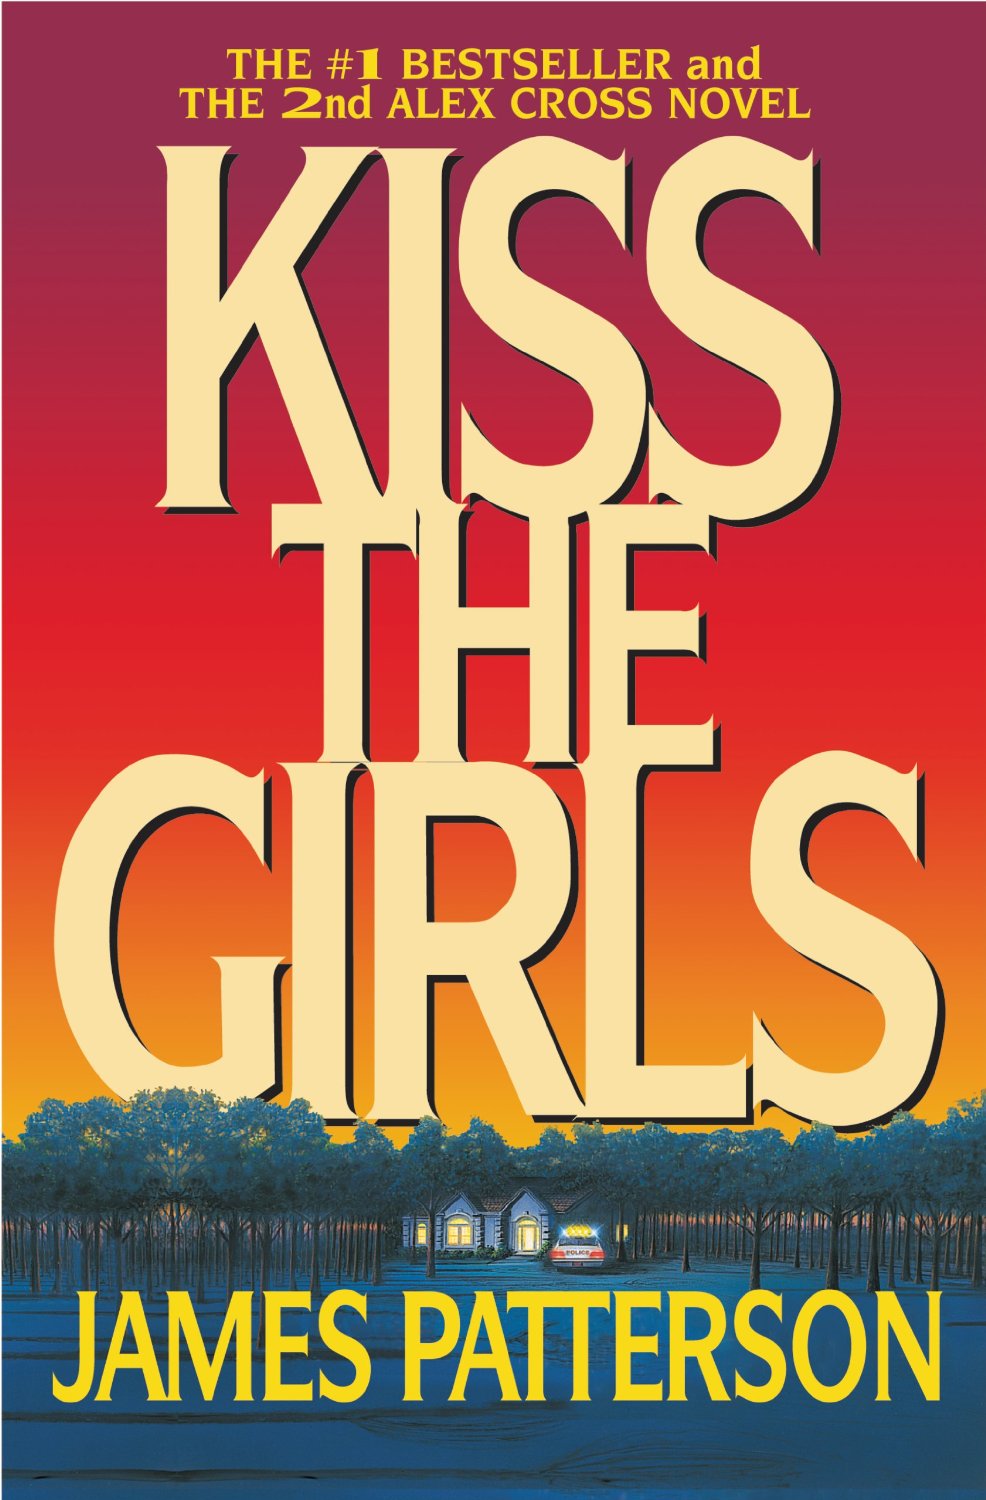 Kiss the girl - Home Facebook